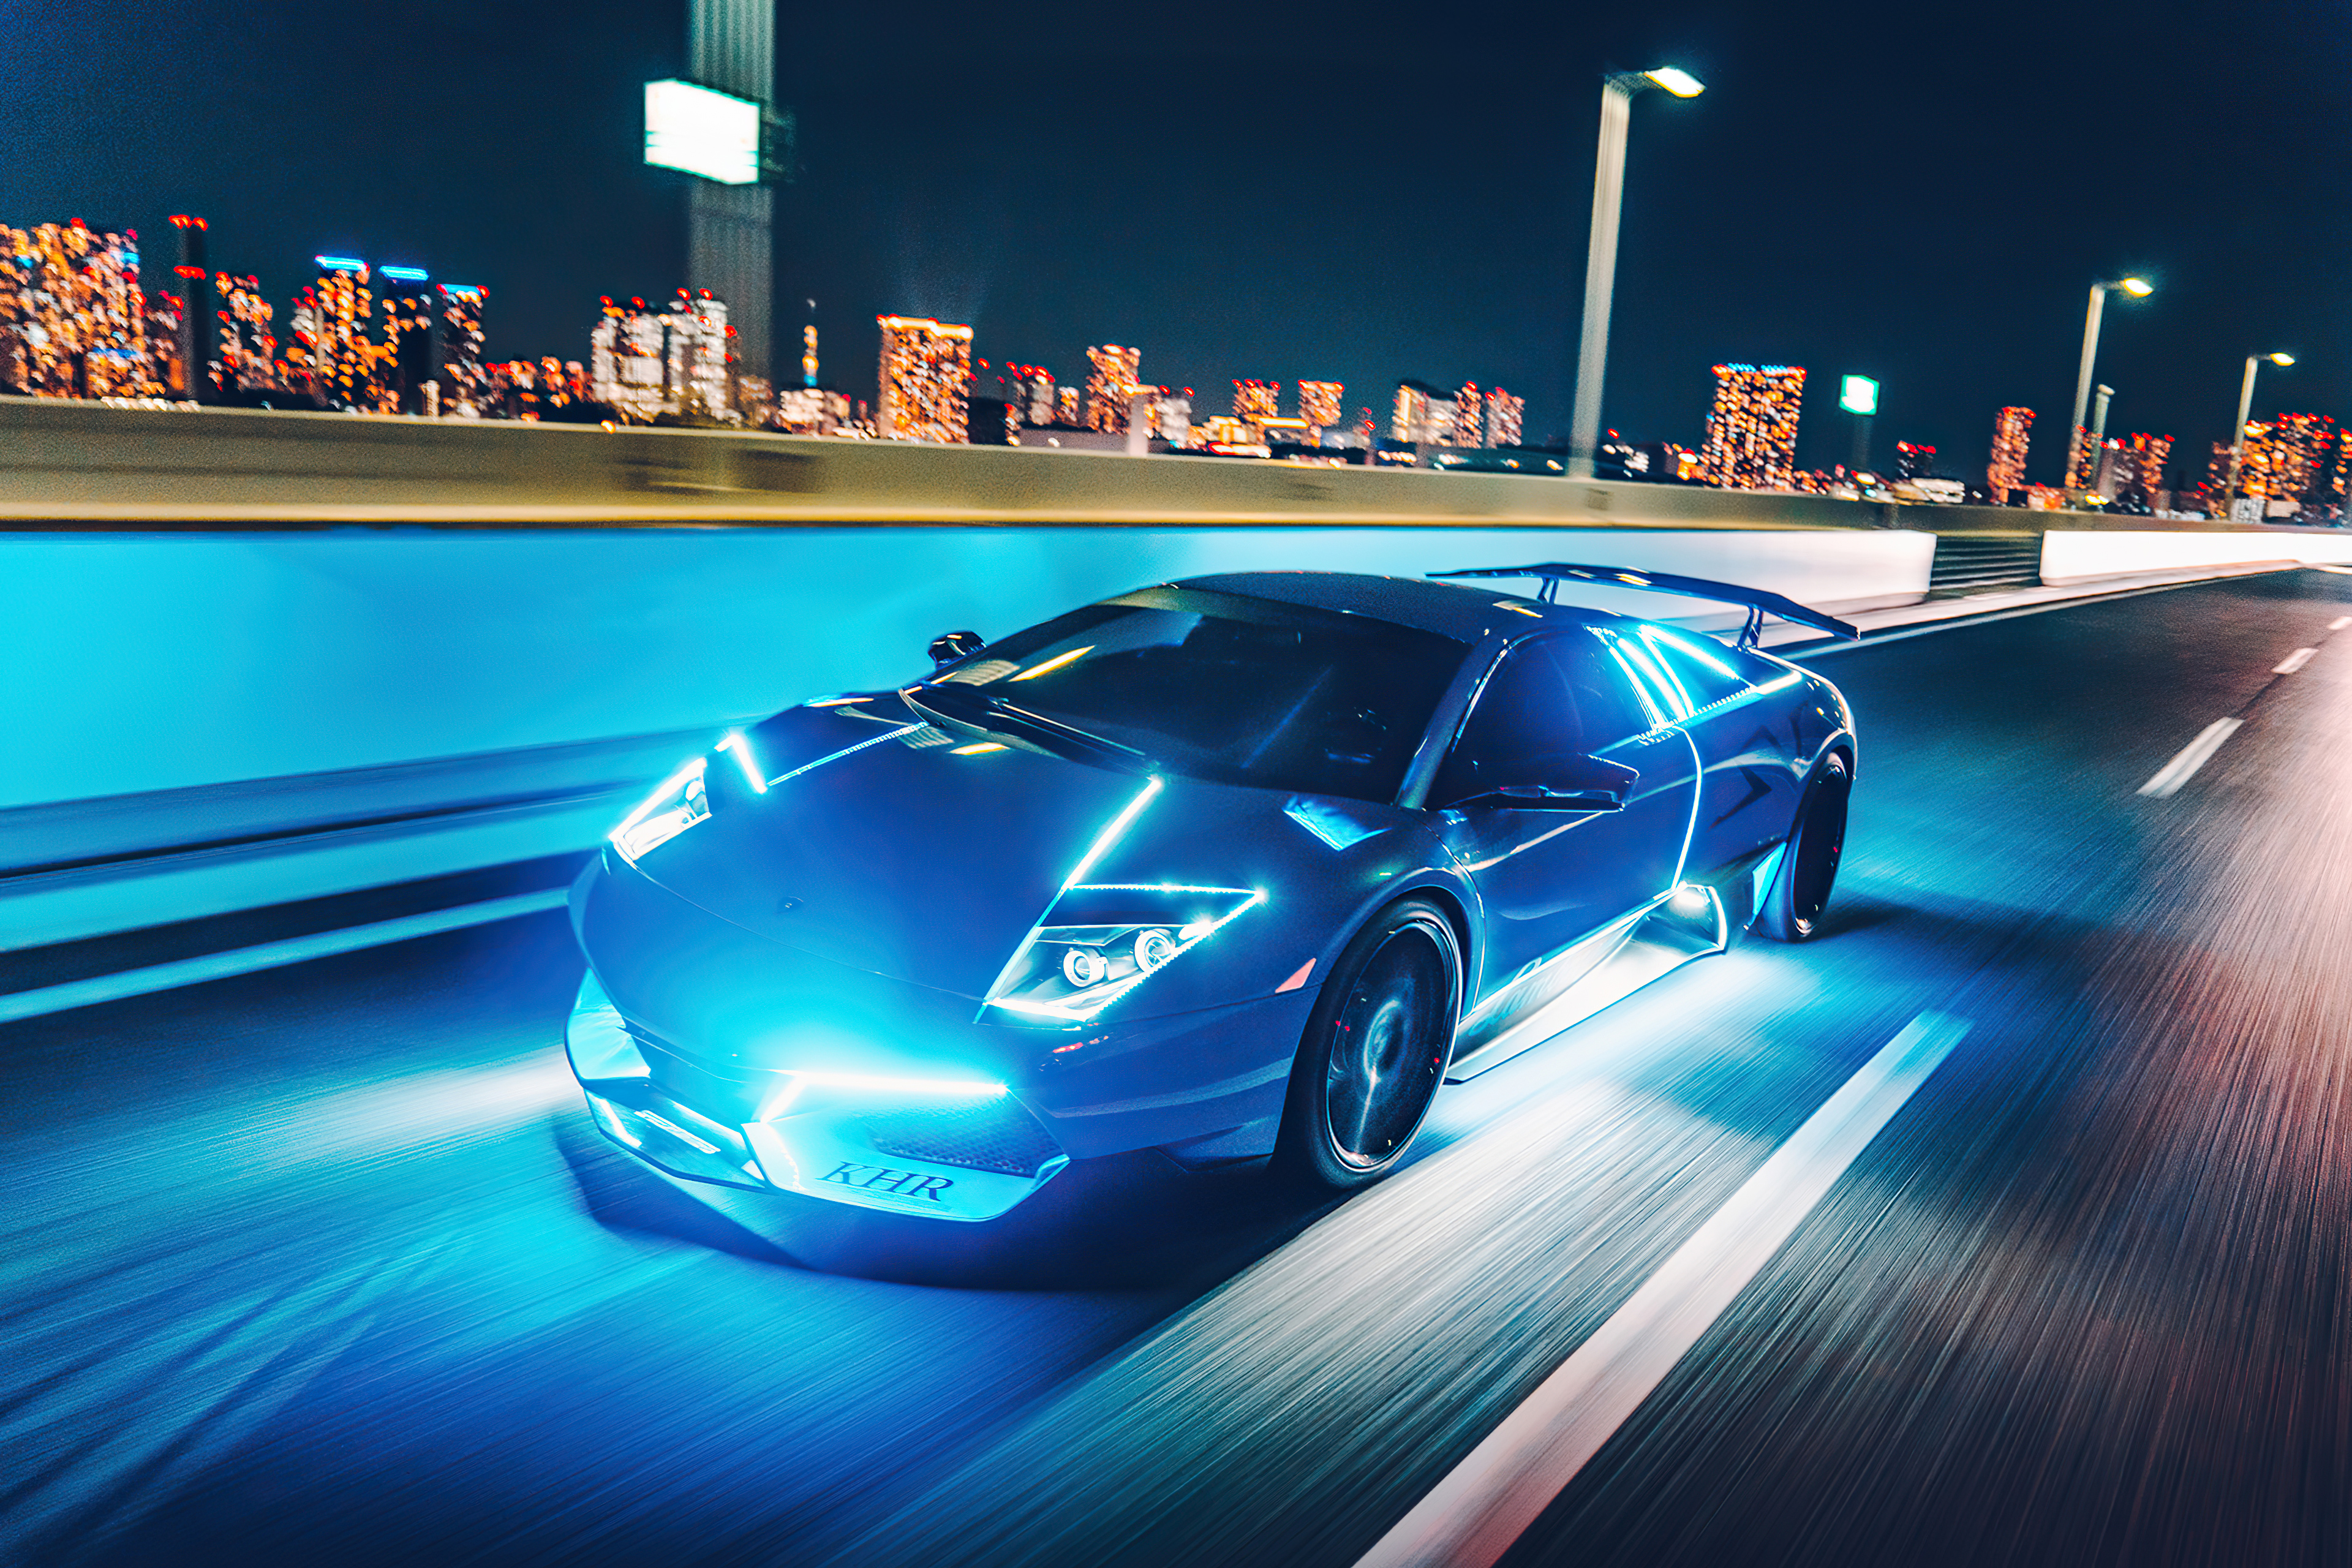 25+] Neon Blue Lamborghini Wallpapers - WallpaperSafari